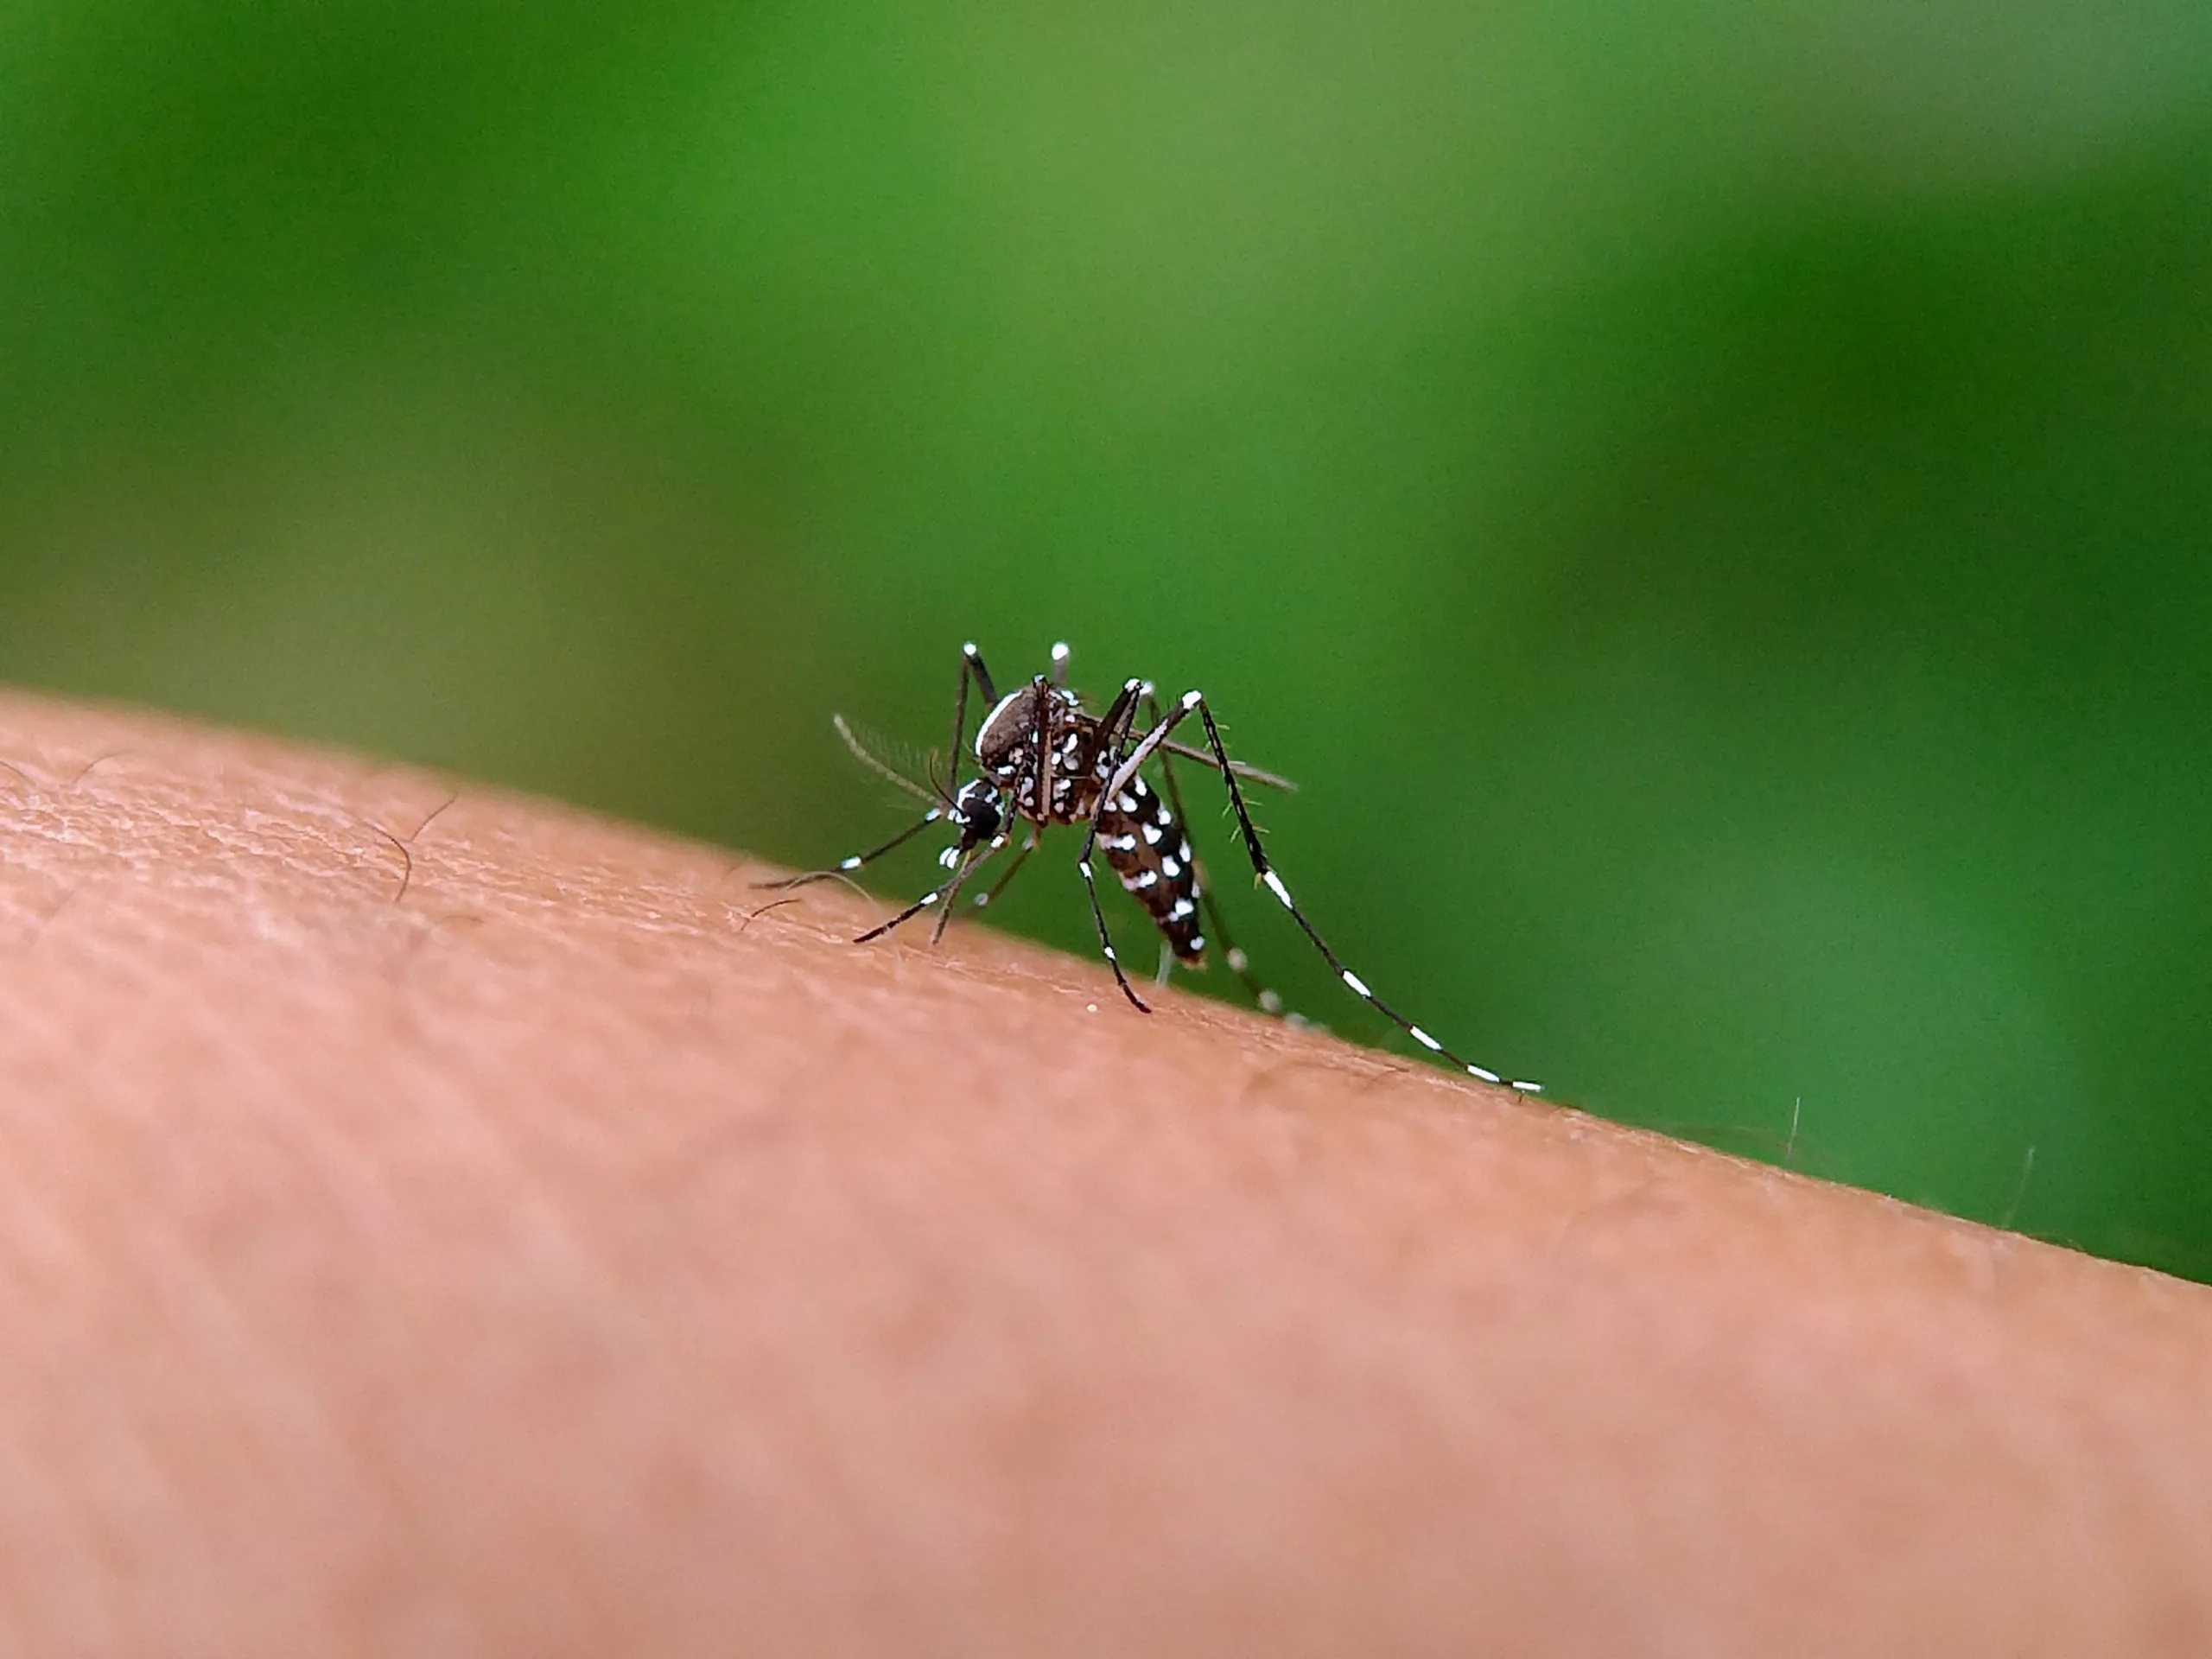 Dengue no Brasil: insights de um cenário de alerta - Image